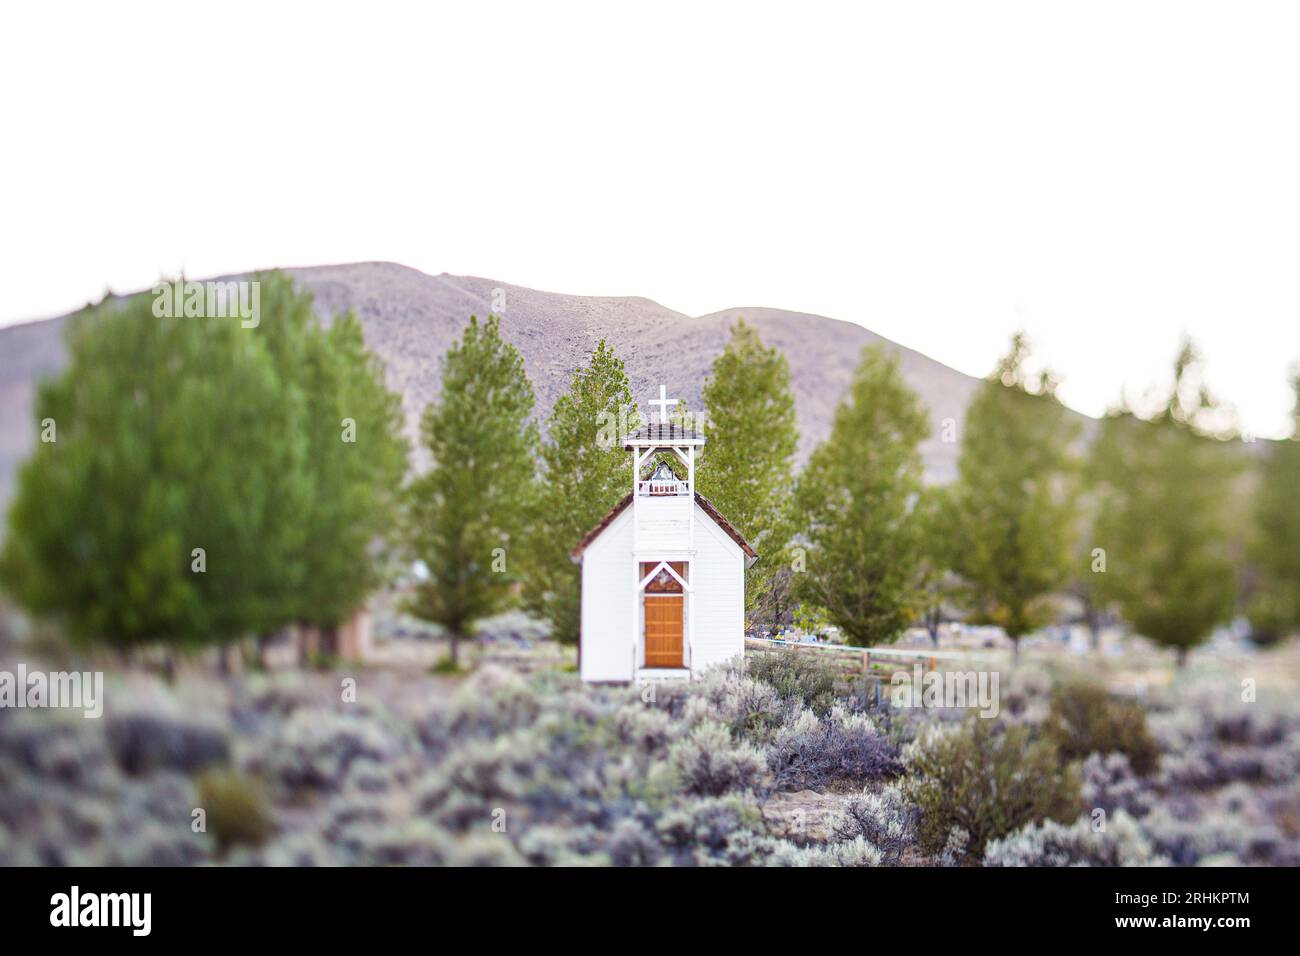 Foto einer kleinen katholischen Landkirche in Doyle, CA Landschaftsreisen Tilt-Shift-Fotografie-Techniken Stockfoto